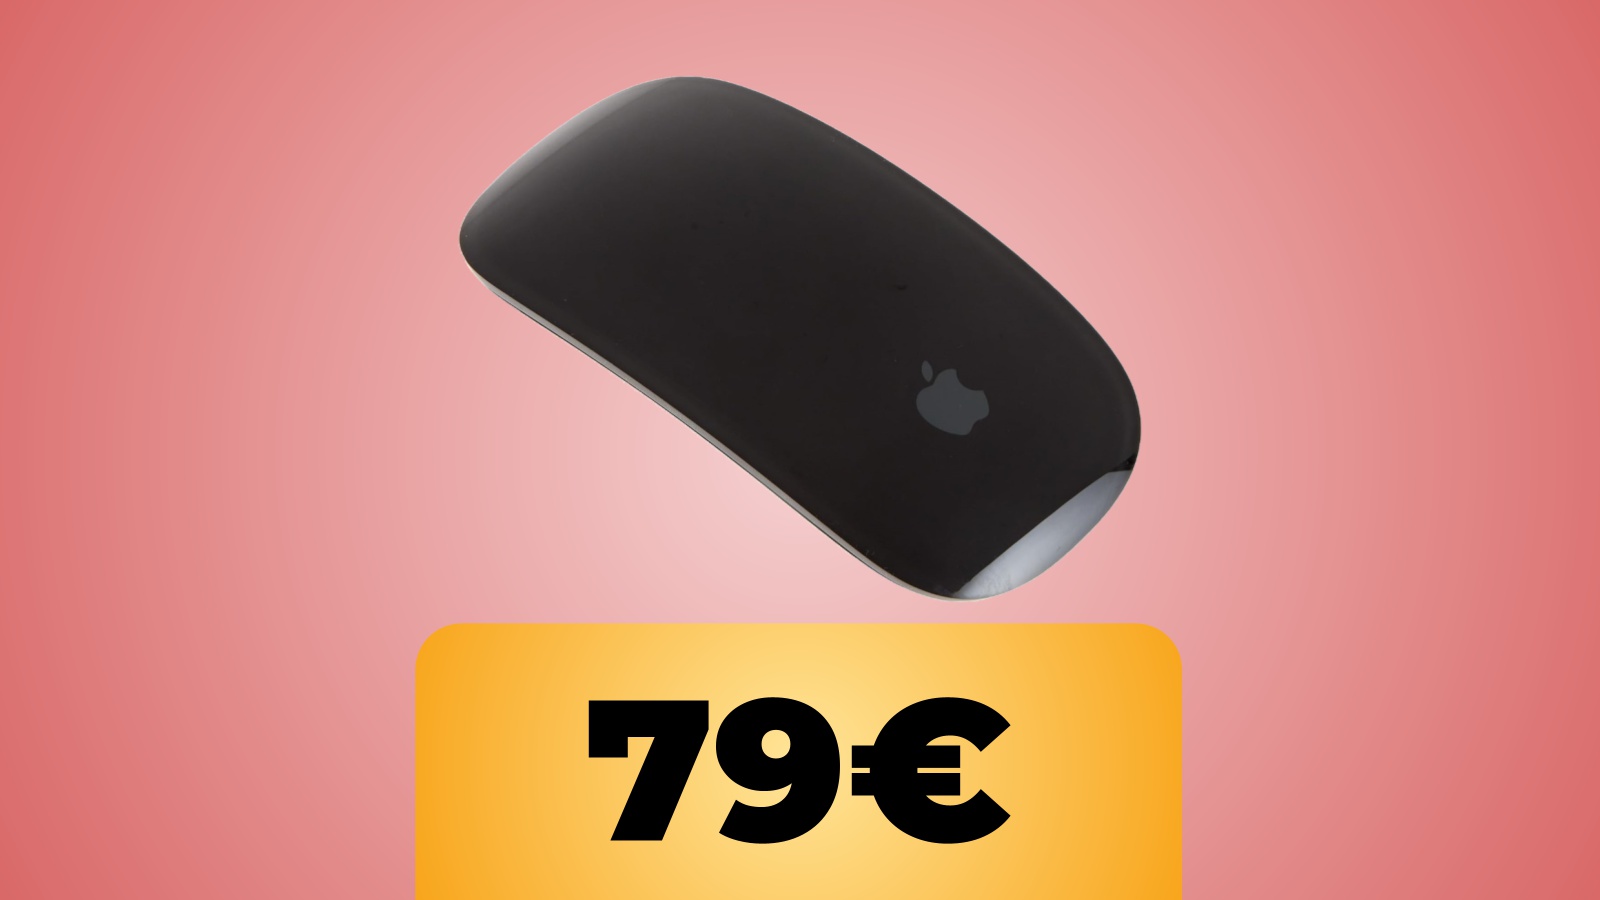 Apple Magic Mouse si trova ora in sconto su Amazon Italia, in entrambi i colori